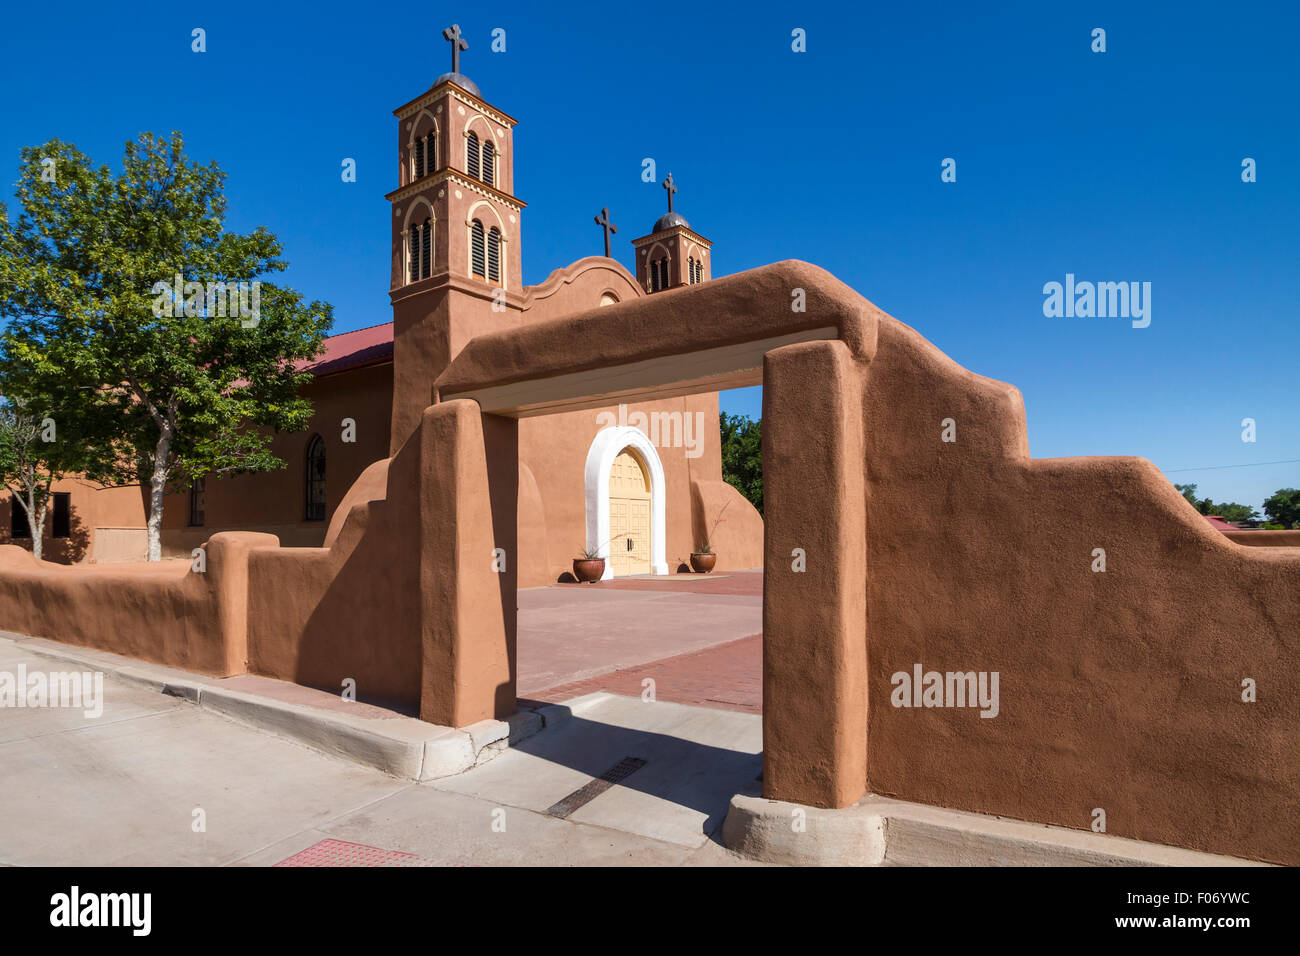 La città vecchia di San Miguel chiesa della missione complessa in Socorro, Nuovo Messico, Stati Uniti d'America. Foto Stock